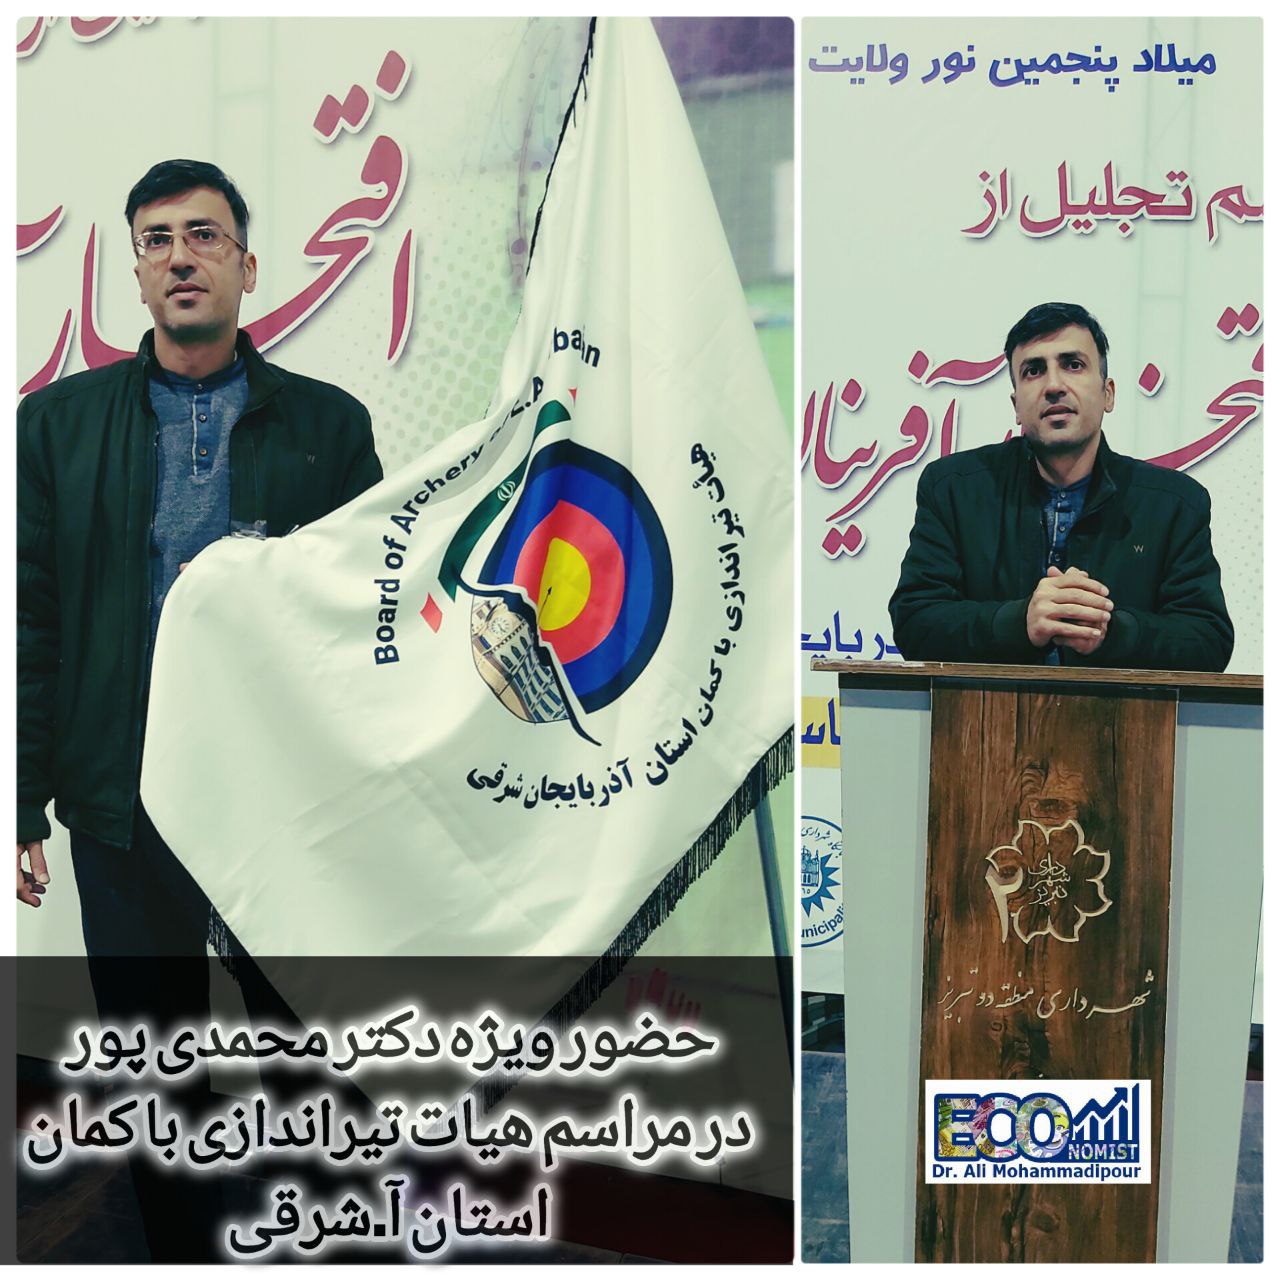 حضور ویژه جناب آقای دکتر محمدی پور در مراسم هیات تیراندازی با کمان استان آذربایجان شرقی 